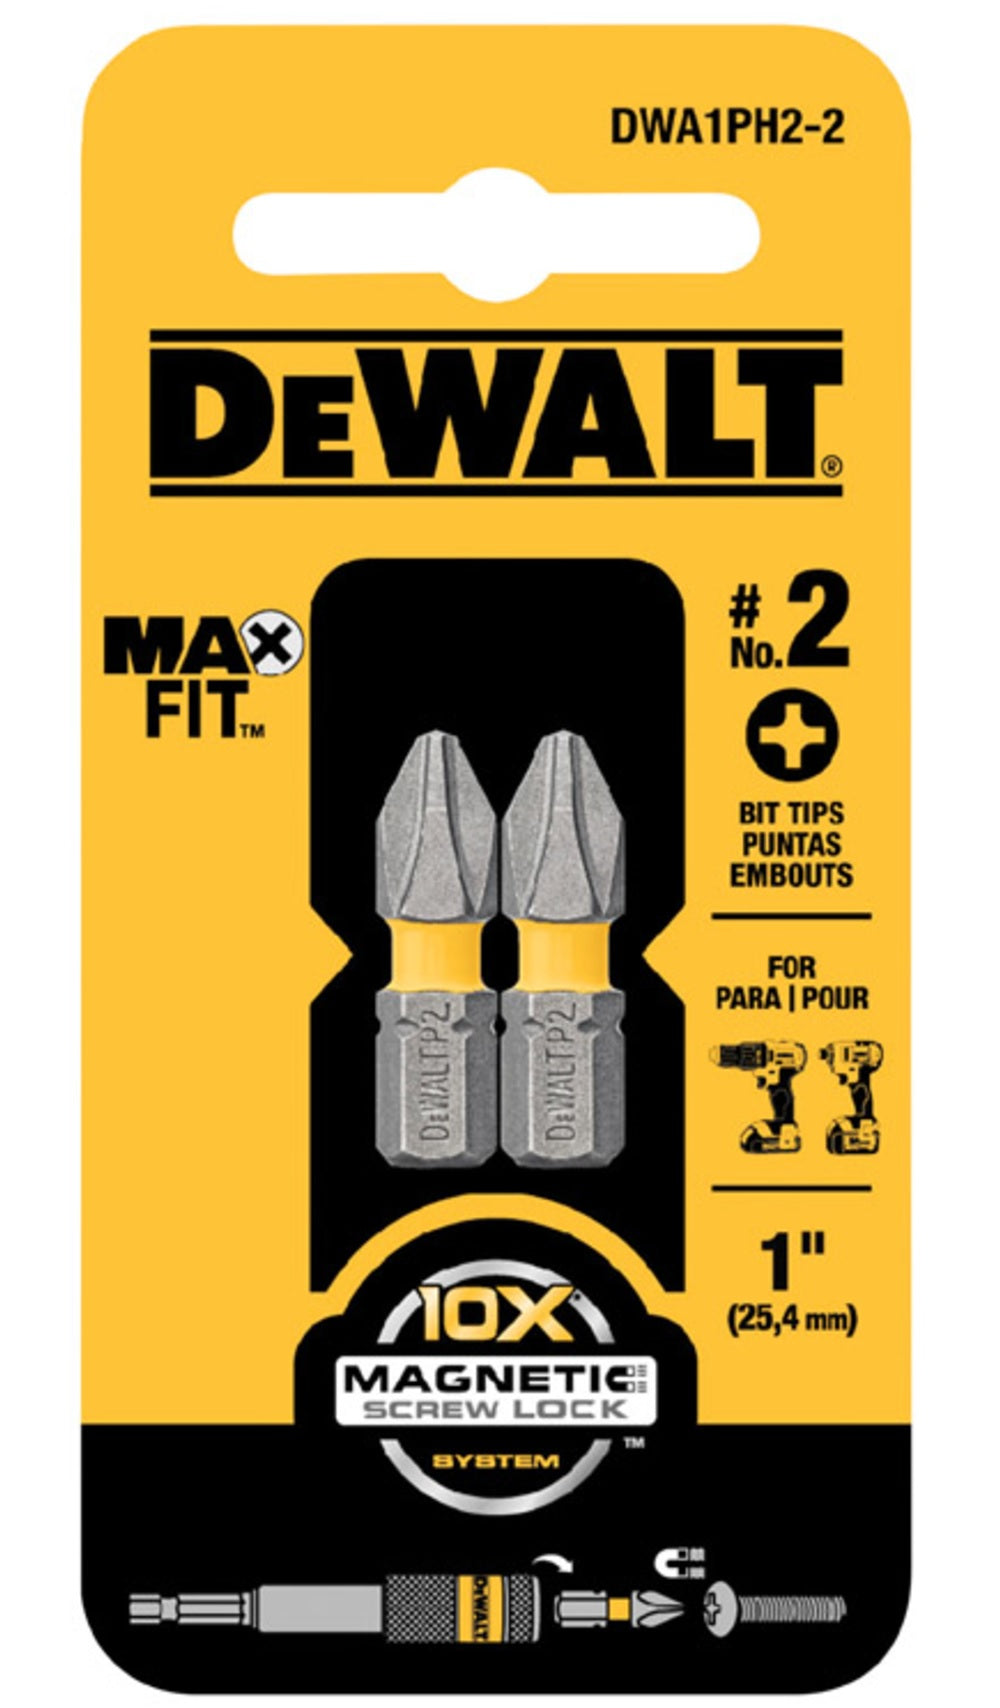 DeWalt DWA1PH2-2 MAXFIT Phillips Insert Bits, #2 x 1"